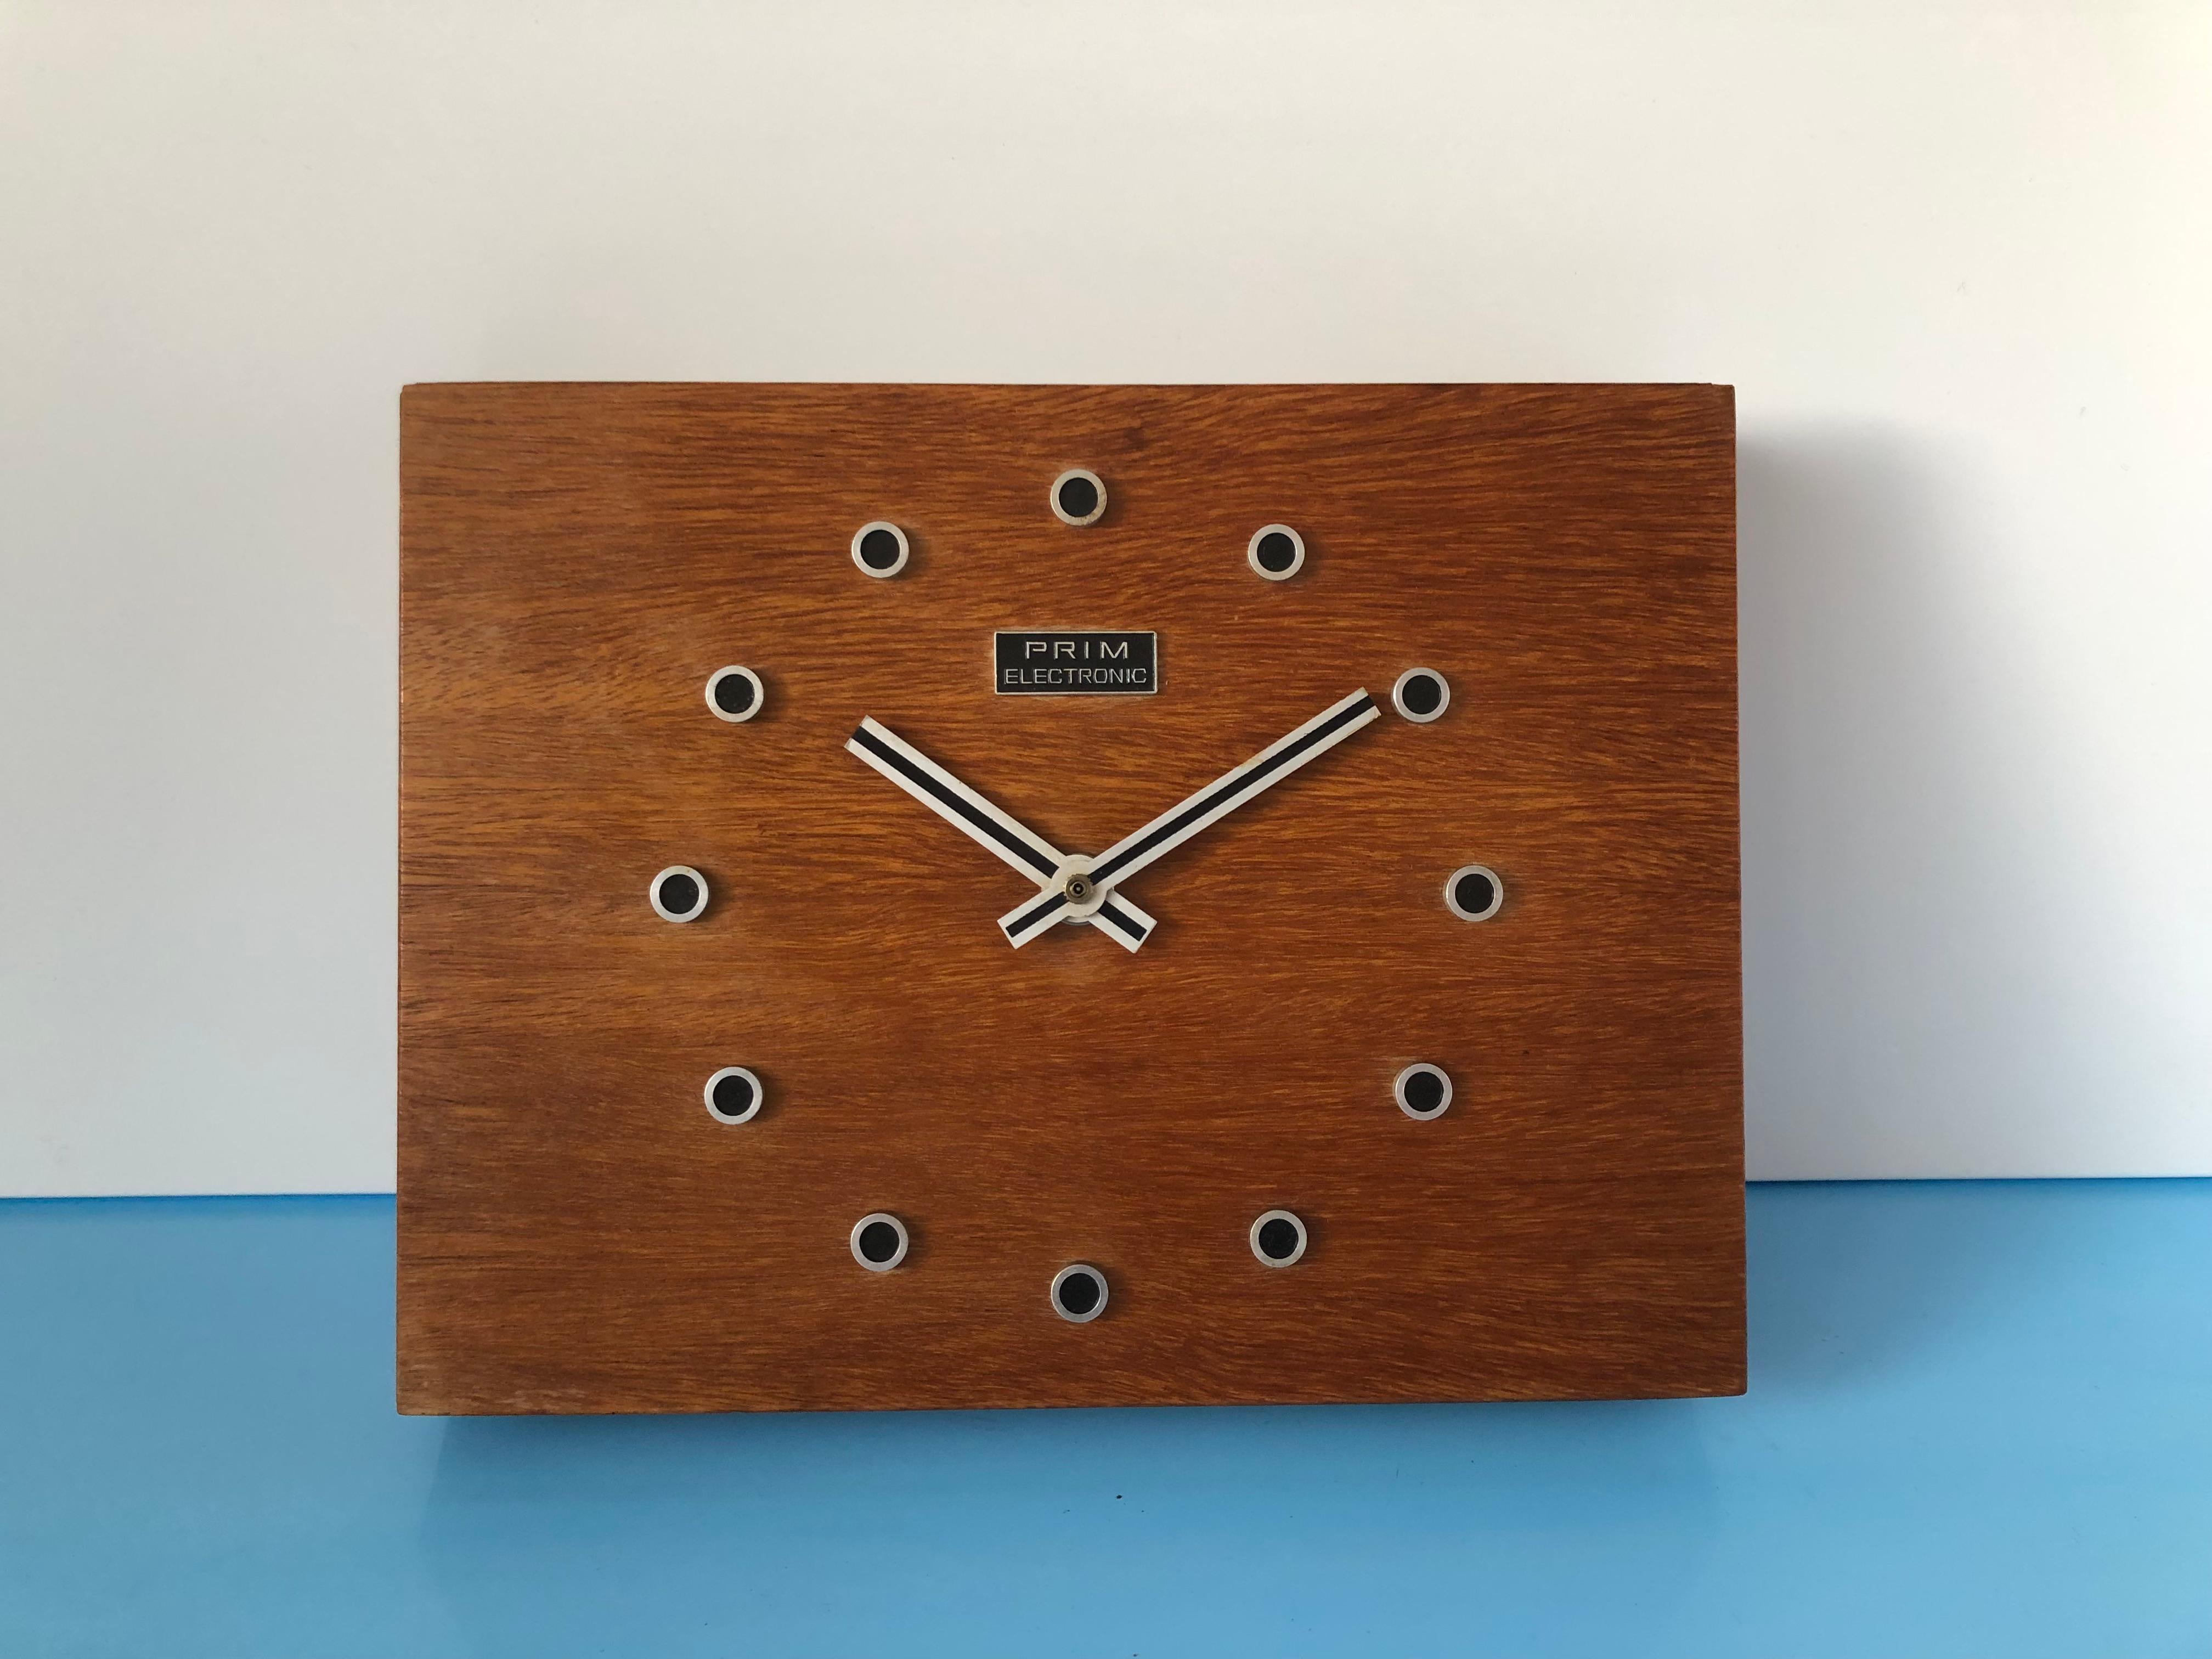 Horloge murale en bois Prim electronic de Tchécoslovaquie.
L'horloge est en bon état d'origine et de fonctionnement,
Horloge à piles.

